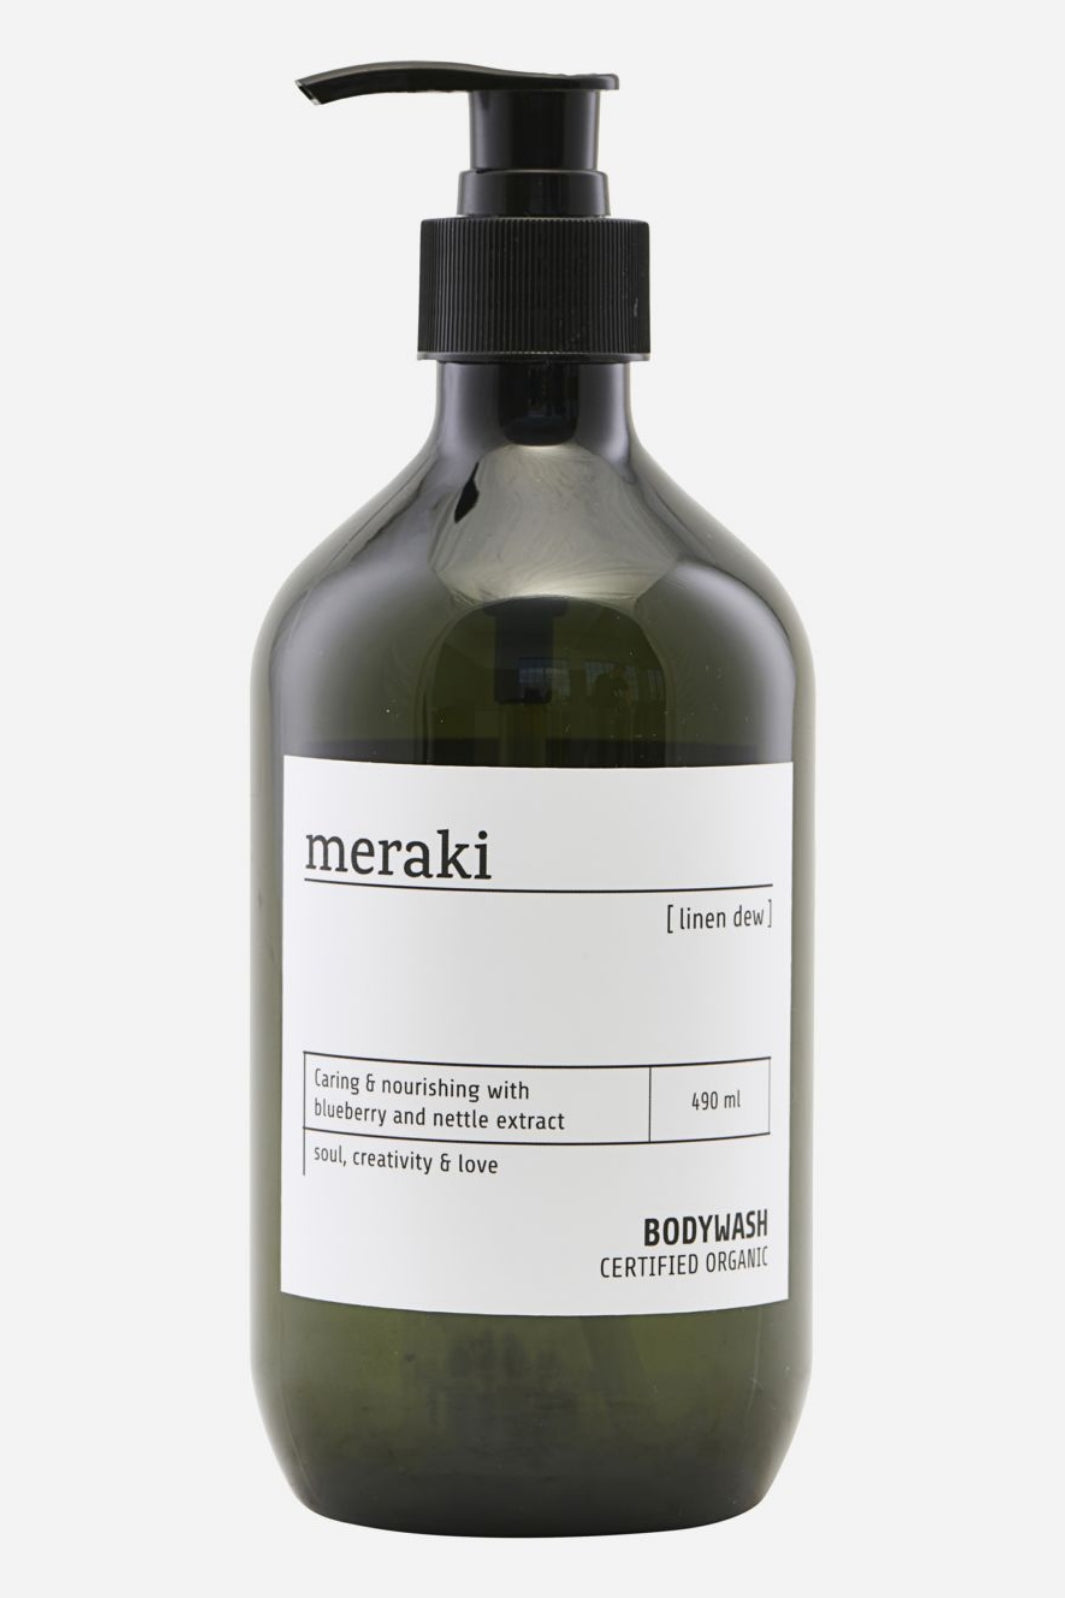 Meraki - Bodywash Linen Dew - 490 ml. Bodywash 